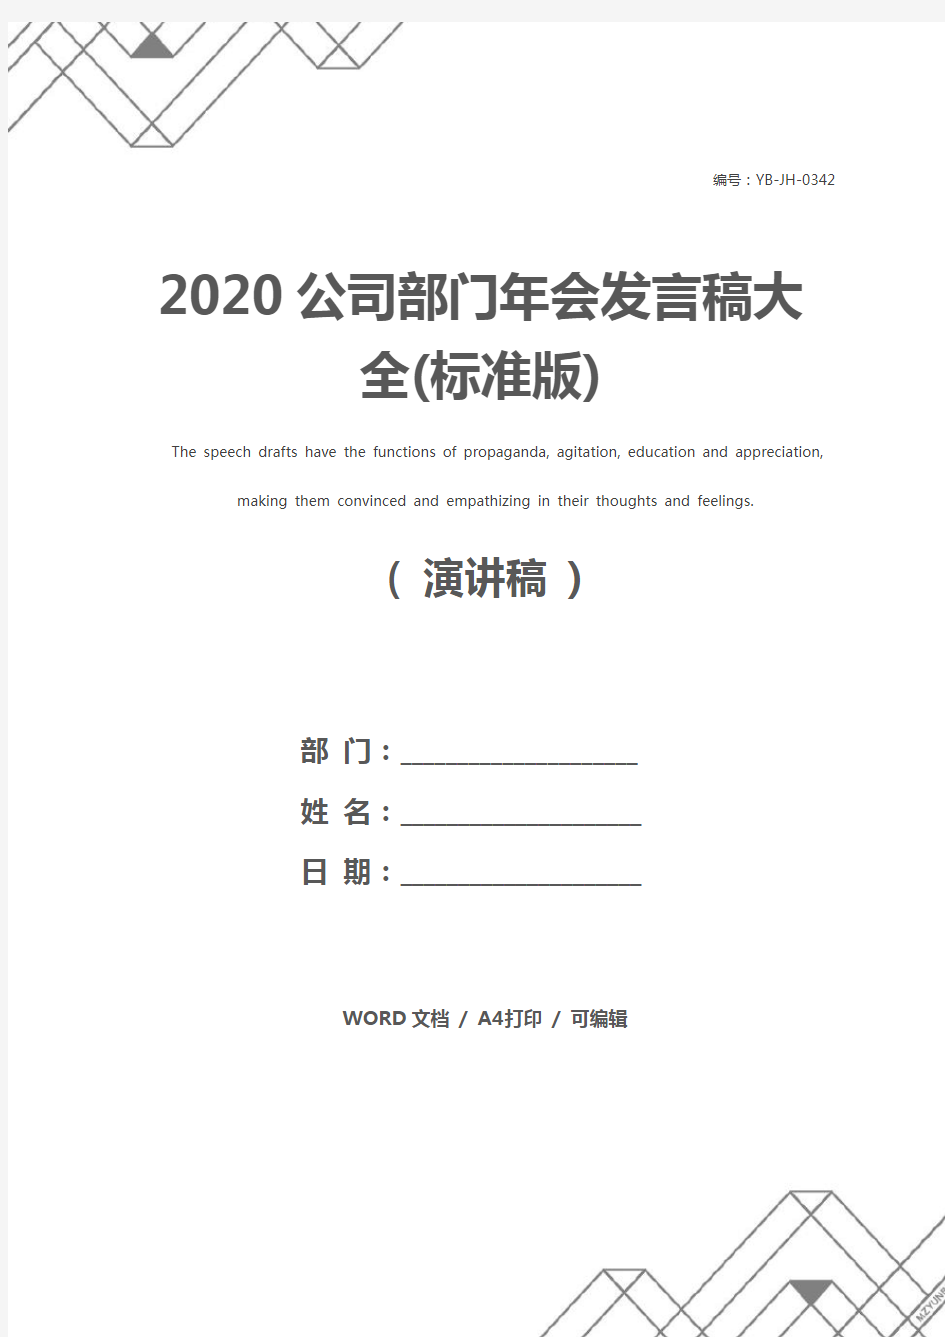 2020公司部门年会发言稿大全(标准版)